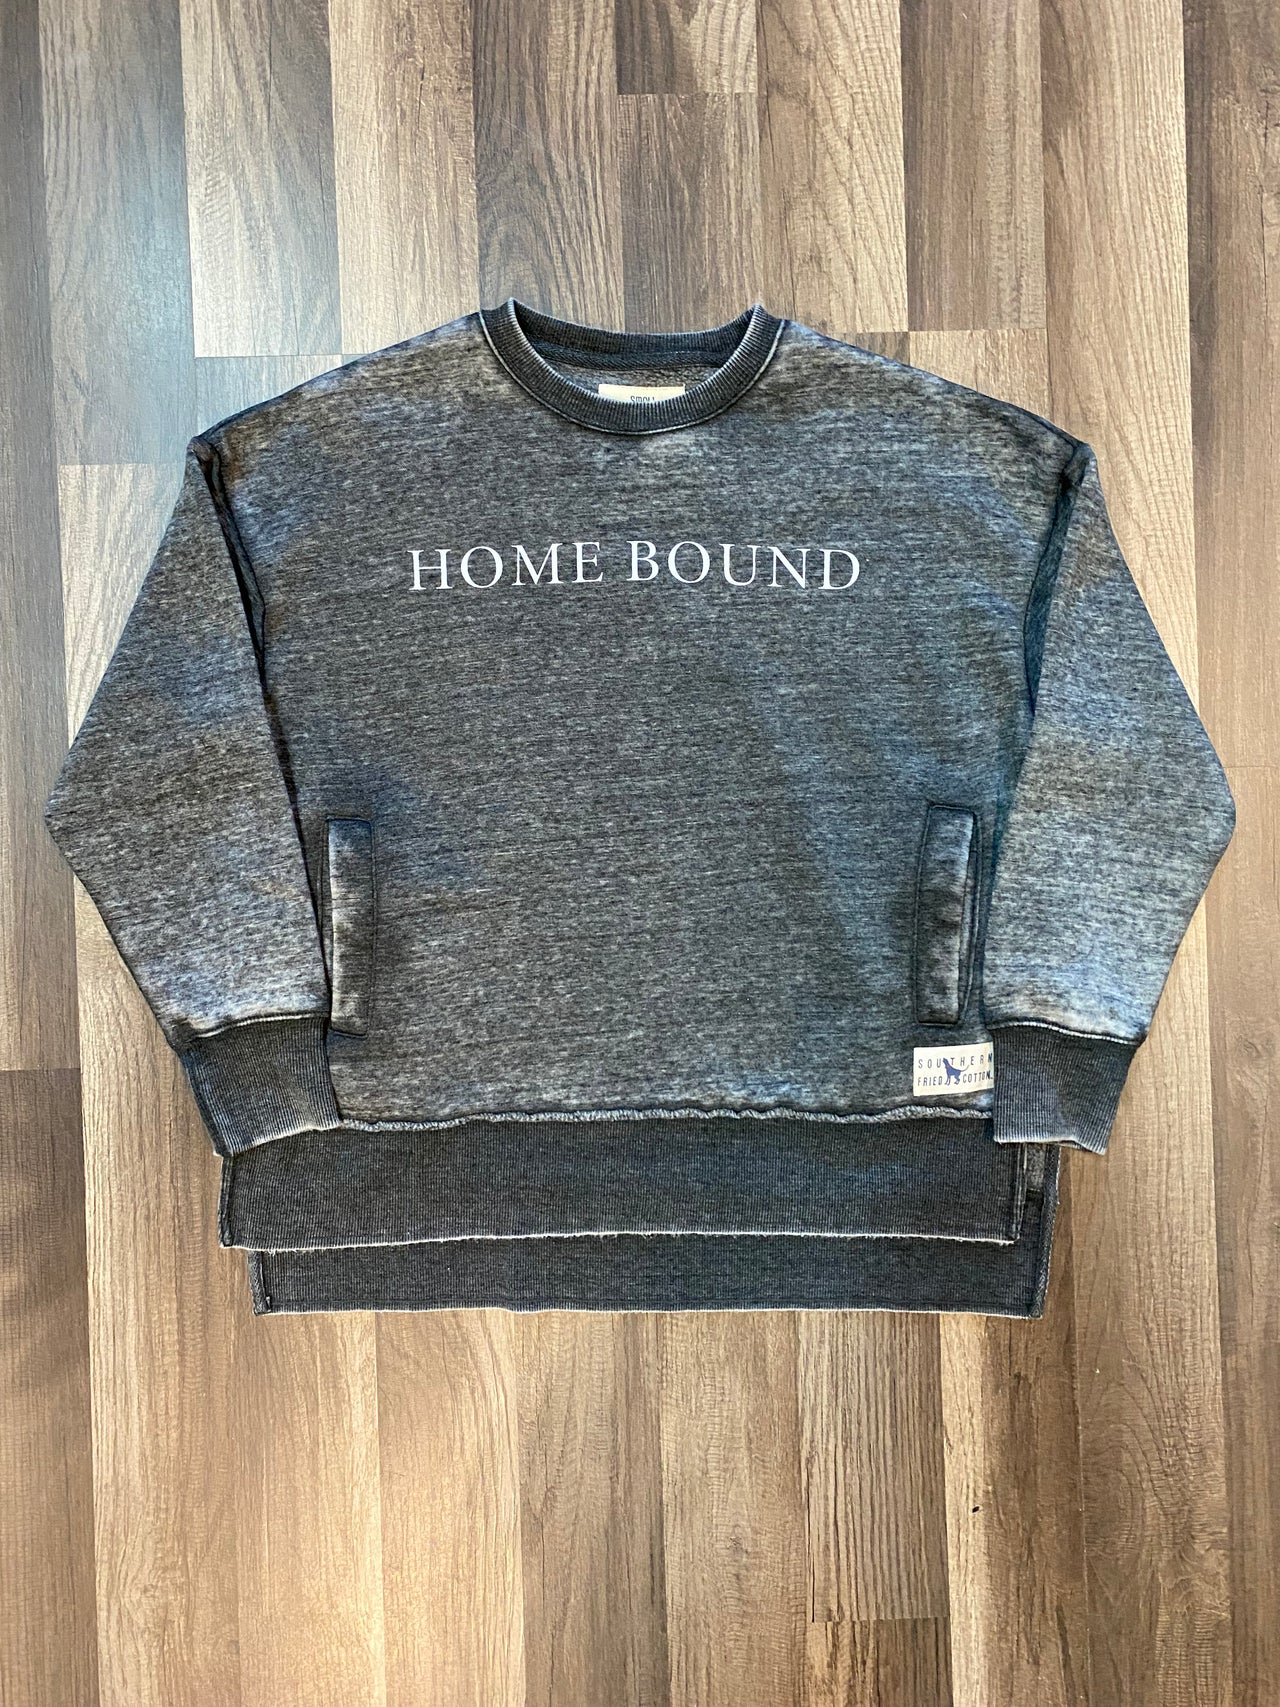 Seaside Home Bound Sweatshirt - Charcoal